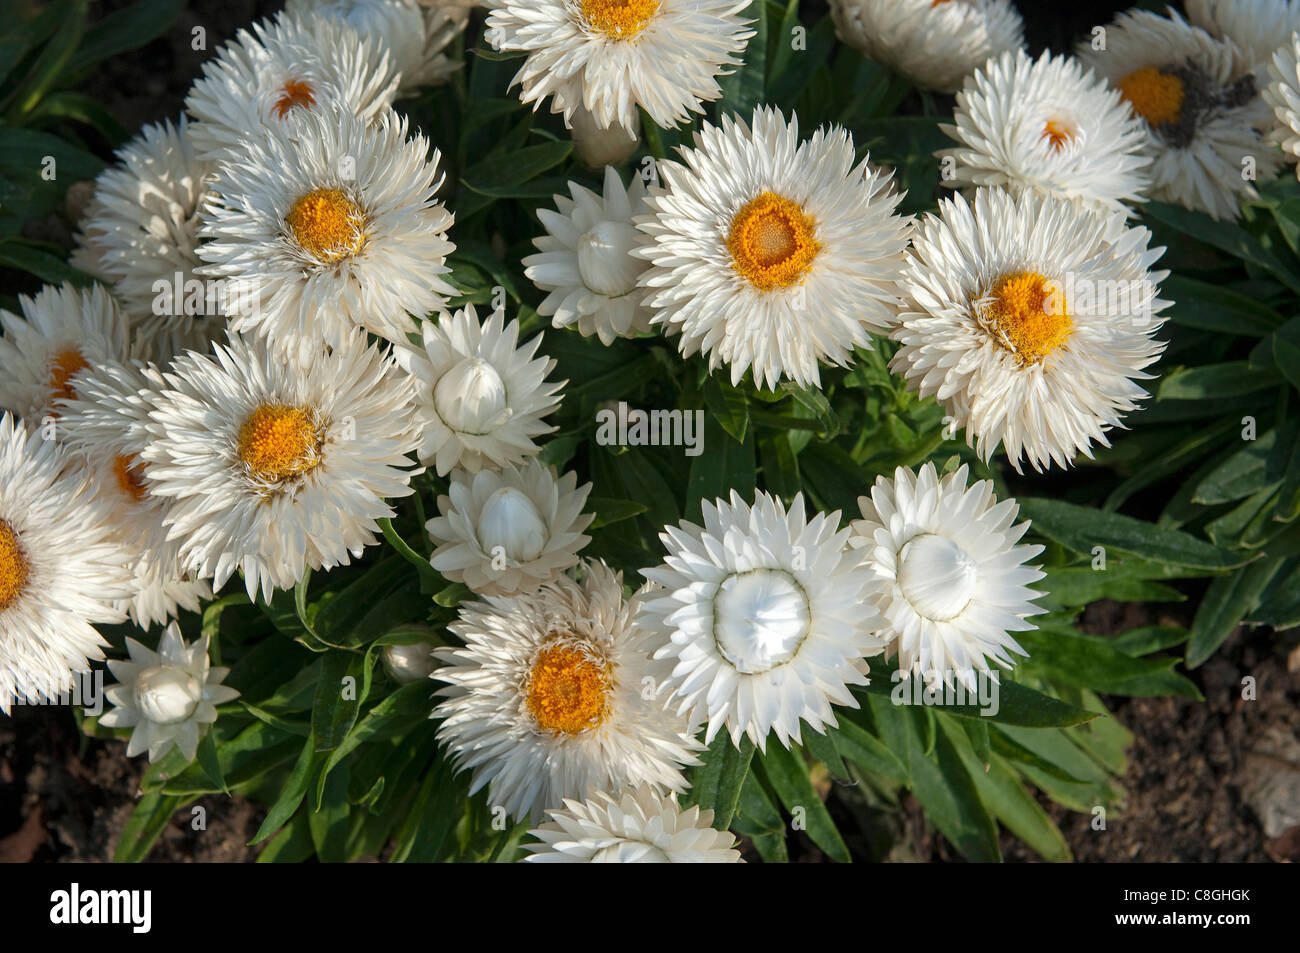 Strawflower (Bracteantha bracteata Dreamtime Jumbo Pure White), flowers. Stock Photo